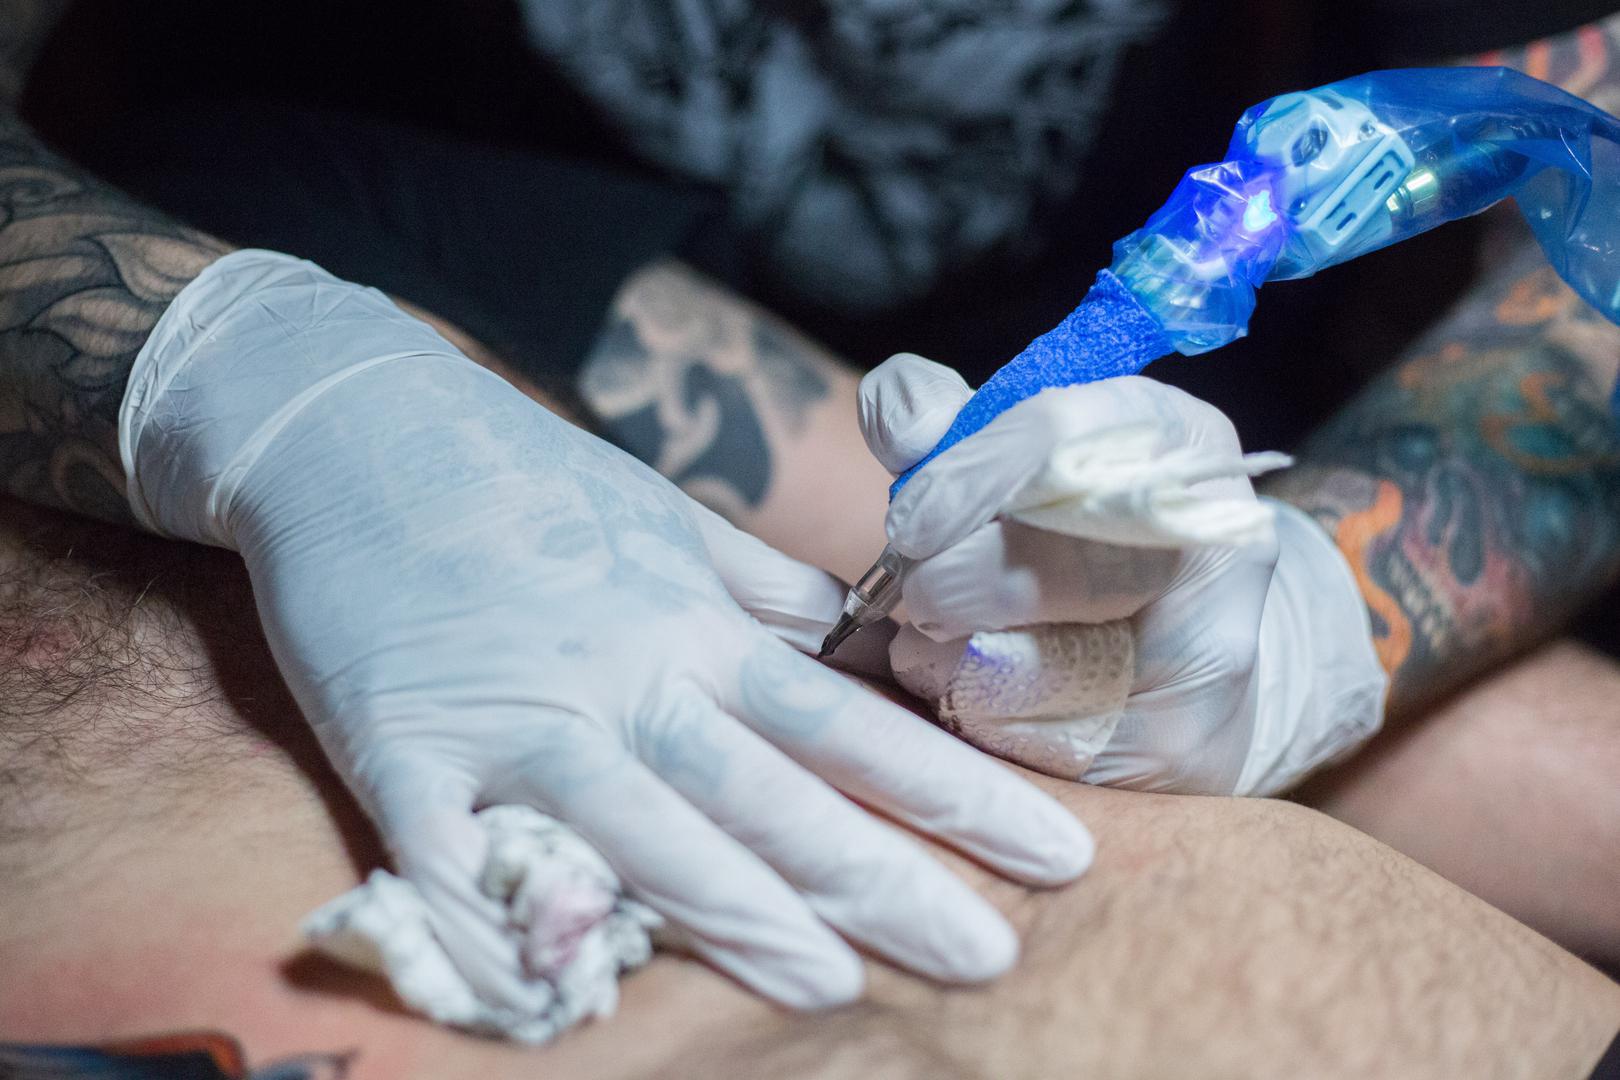 Tetovaže više nisu što su nekoć bile, postale su globalni pomodni trend kojem ne odolijevaju ni policajci